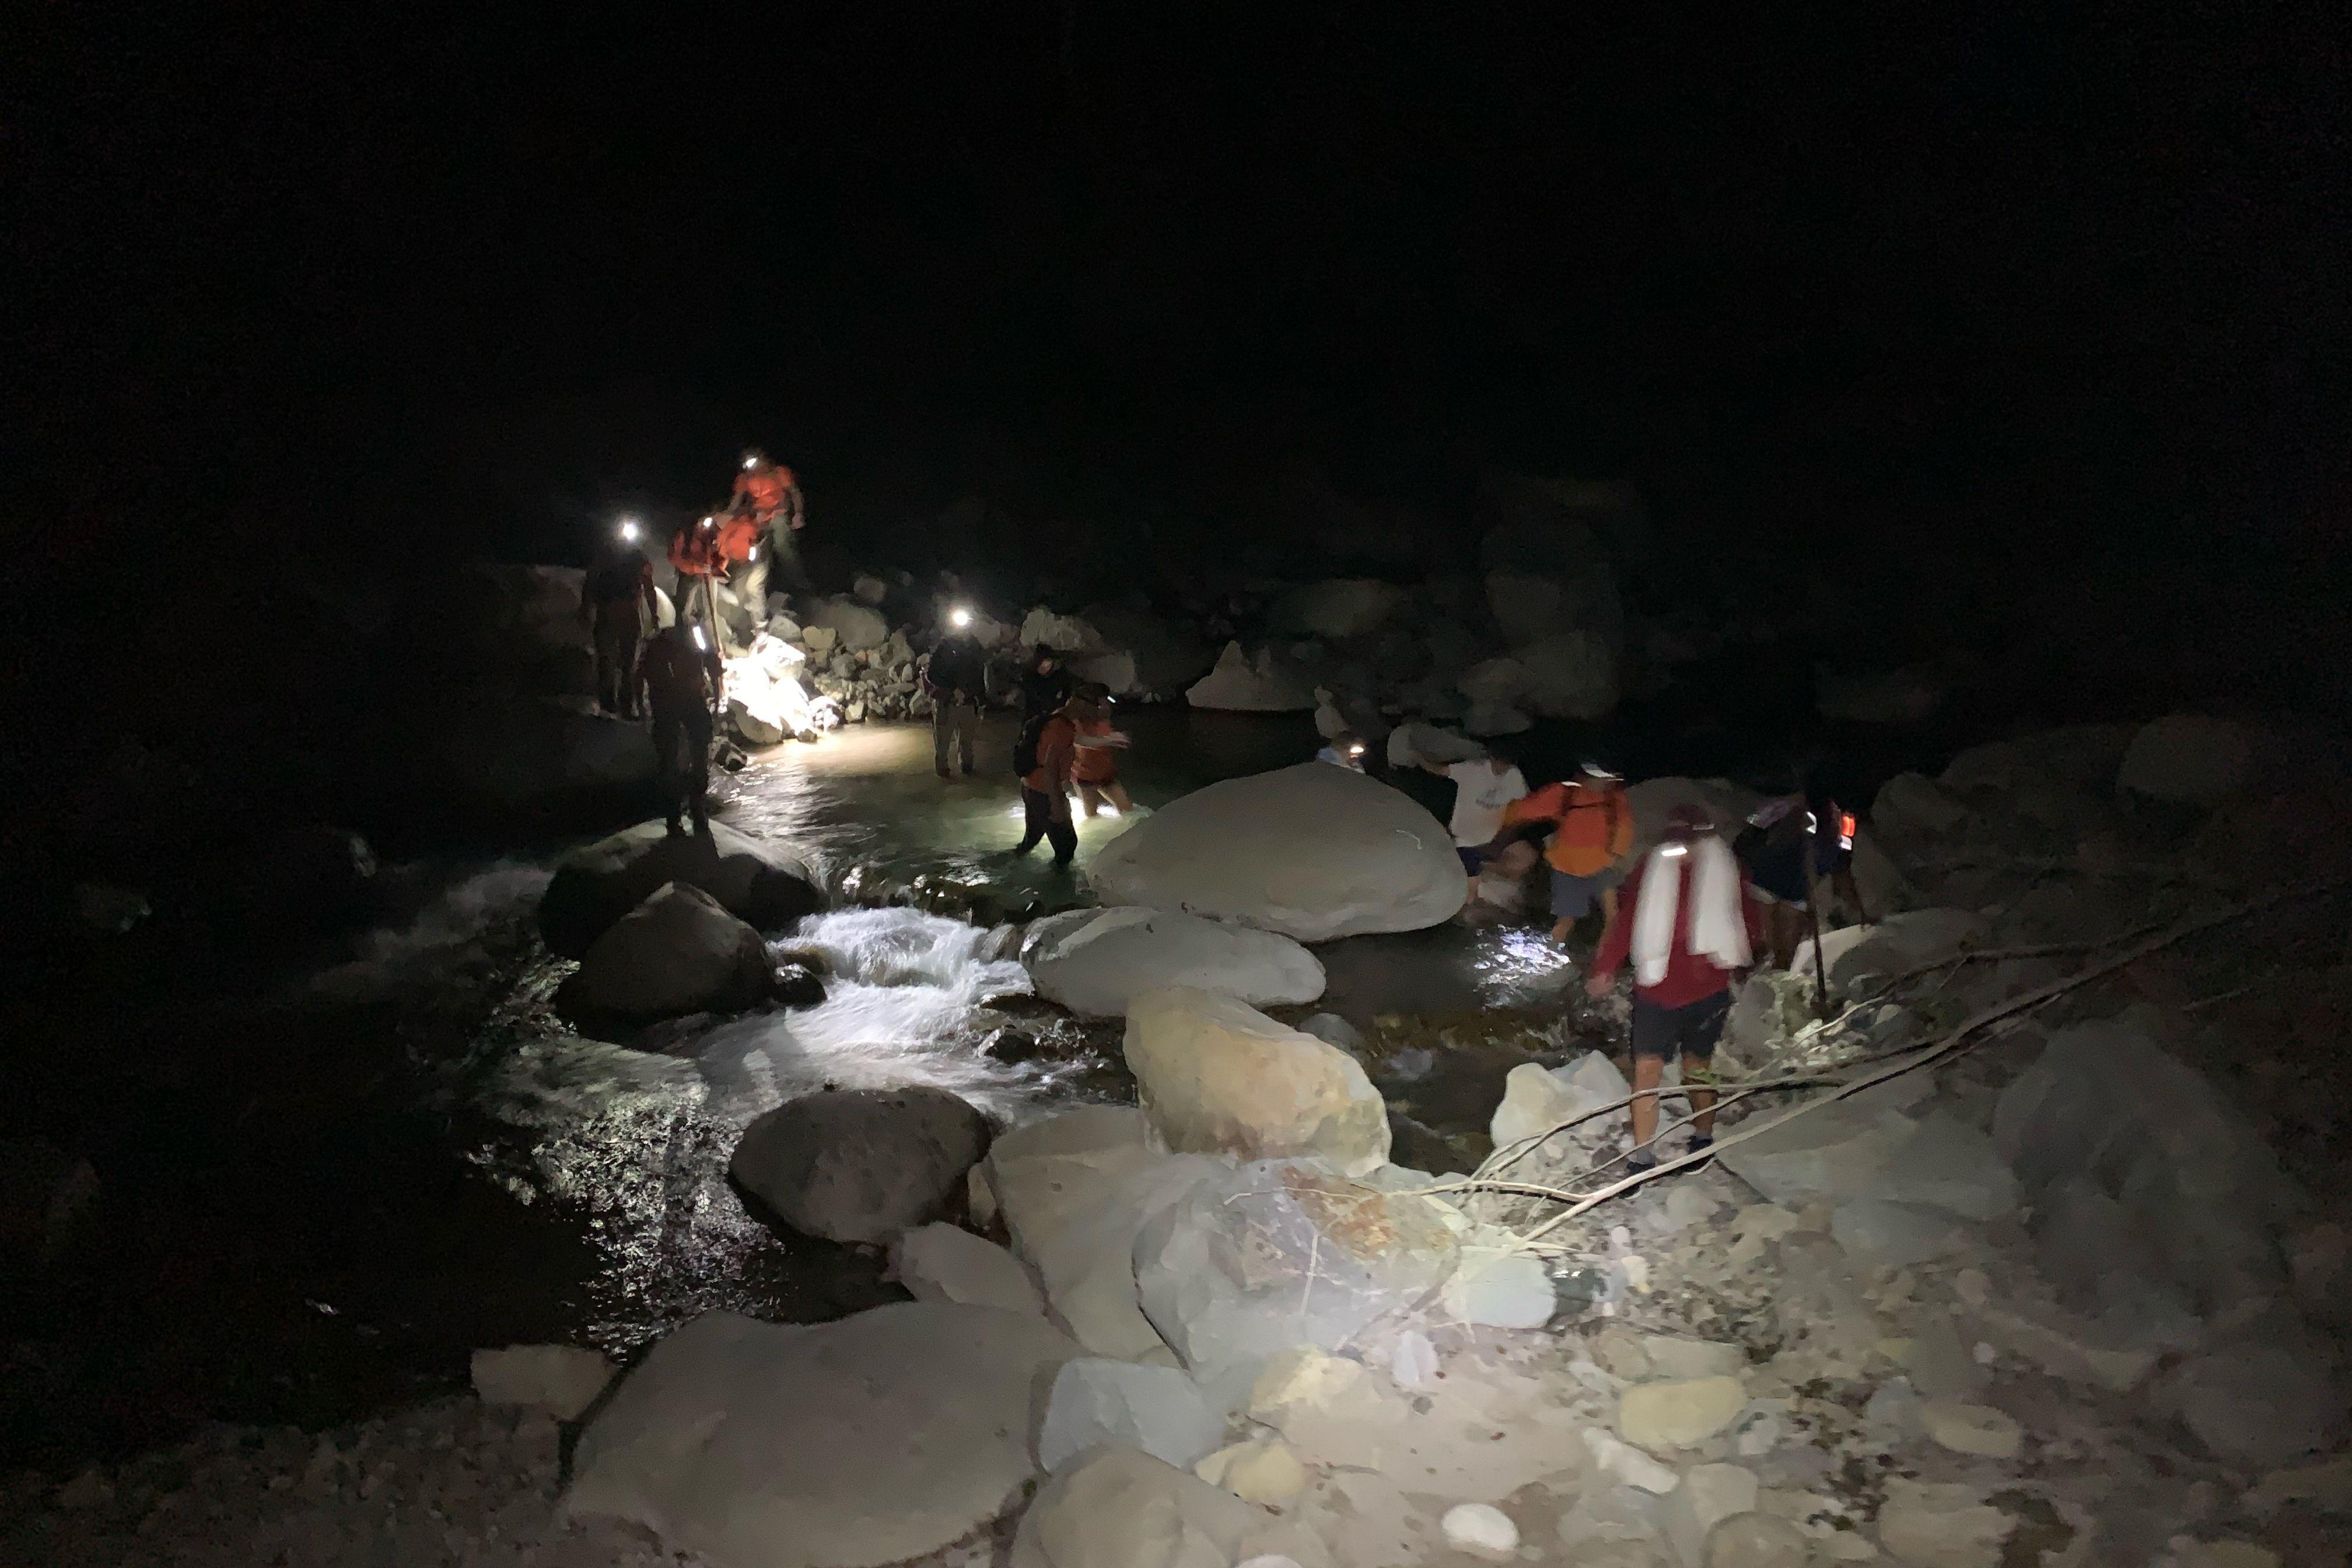 Image reproduite avec l'aimable autorisation du bureau du shérif du comté de Ventura - Le SOS d'urgence de l'iPhone sauve 10 randonneurs de "Dernière chance" canyon